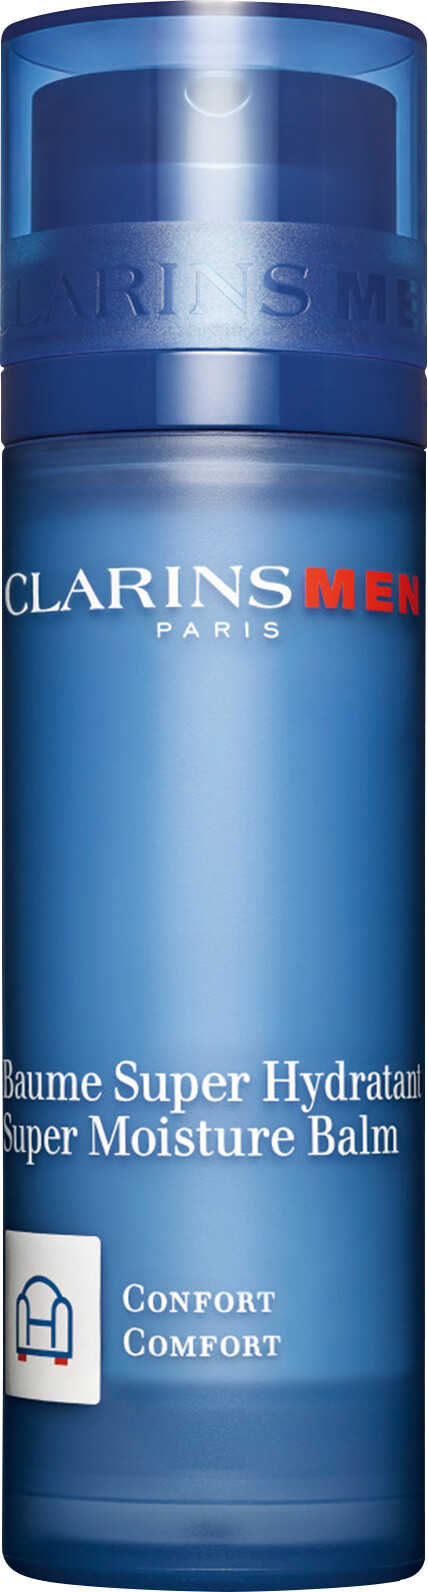 Clarins Men Super Moisture Balm 50ml